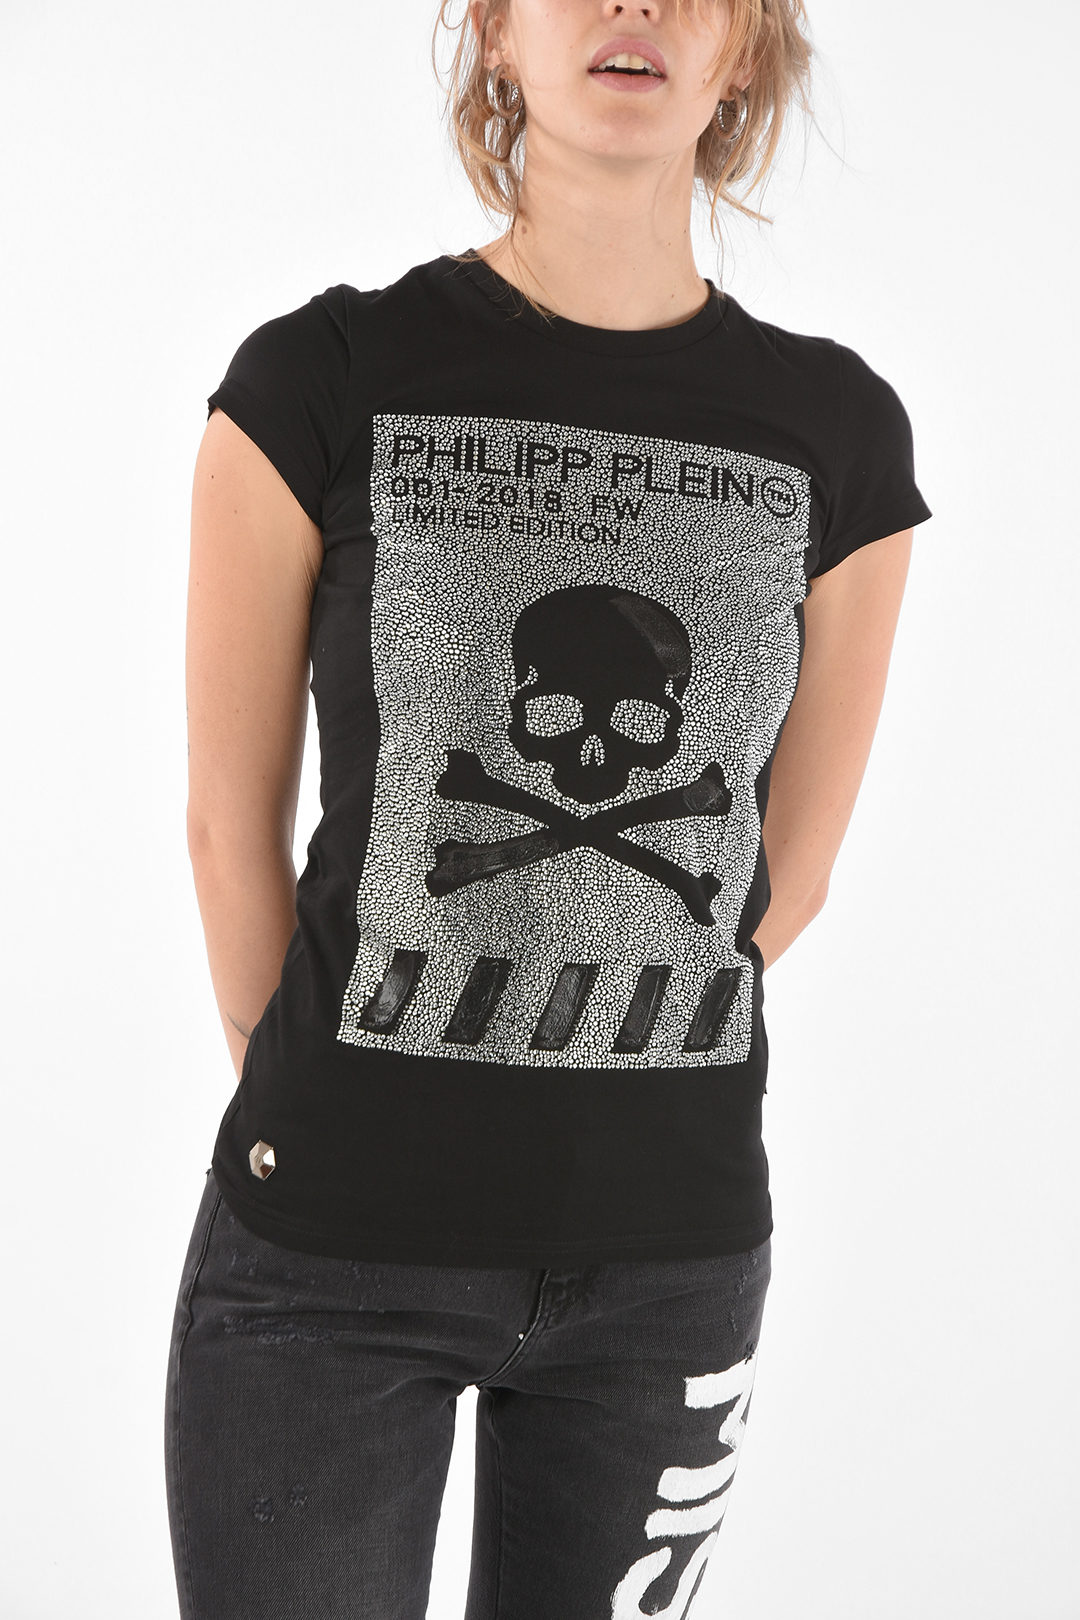 uitdrukken Humaan Niet ingewikkeld Philipp Plein Crew Neck SKULL Strass T-Shirt women - Glamood Outlet